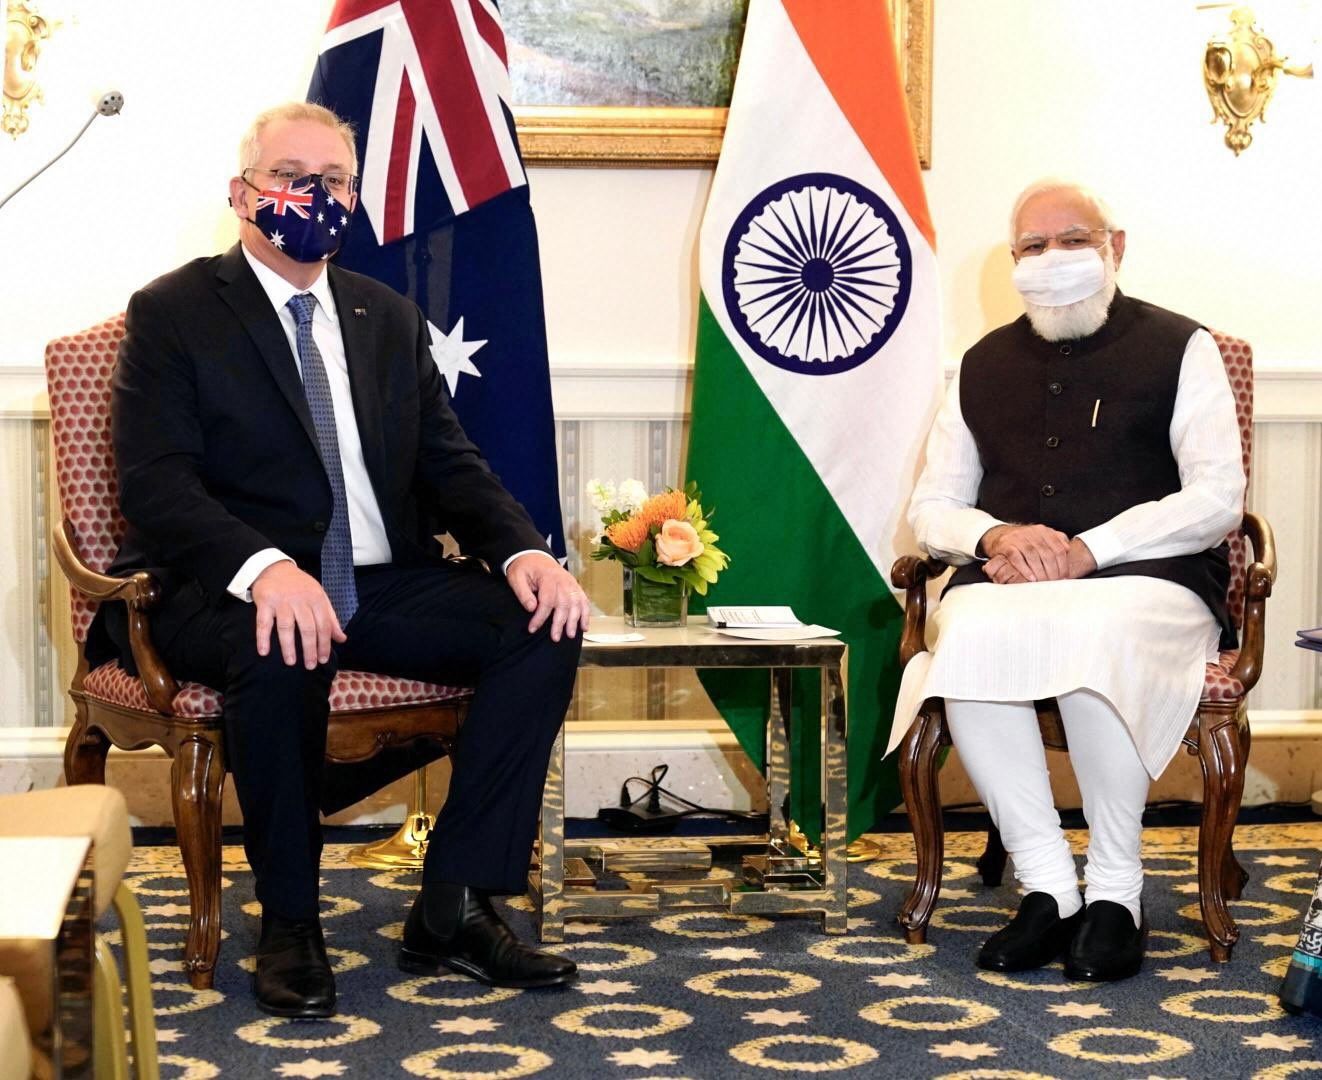 Ahead of Quad summit, India-Australia discuss Indo-Pacific co-operation